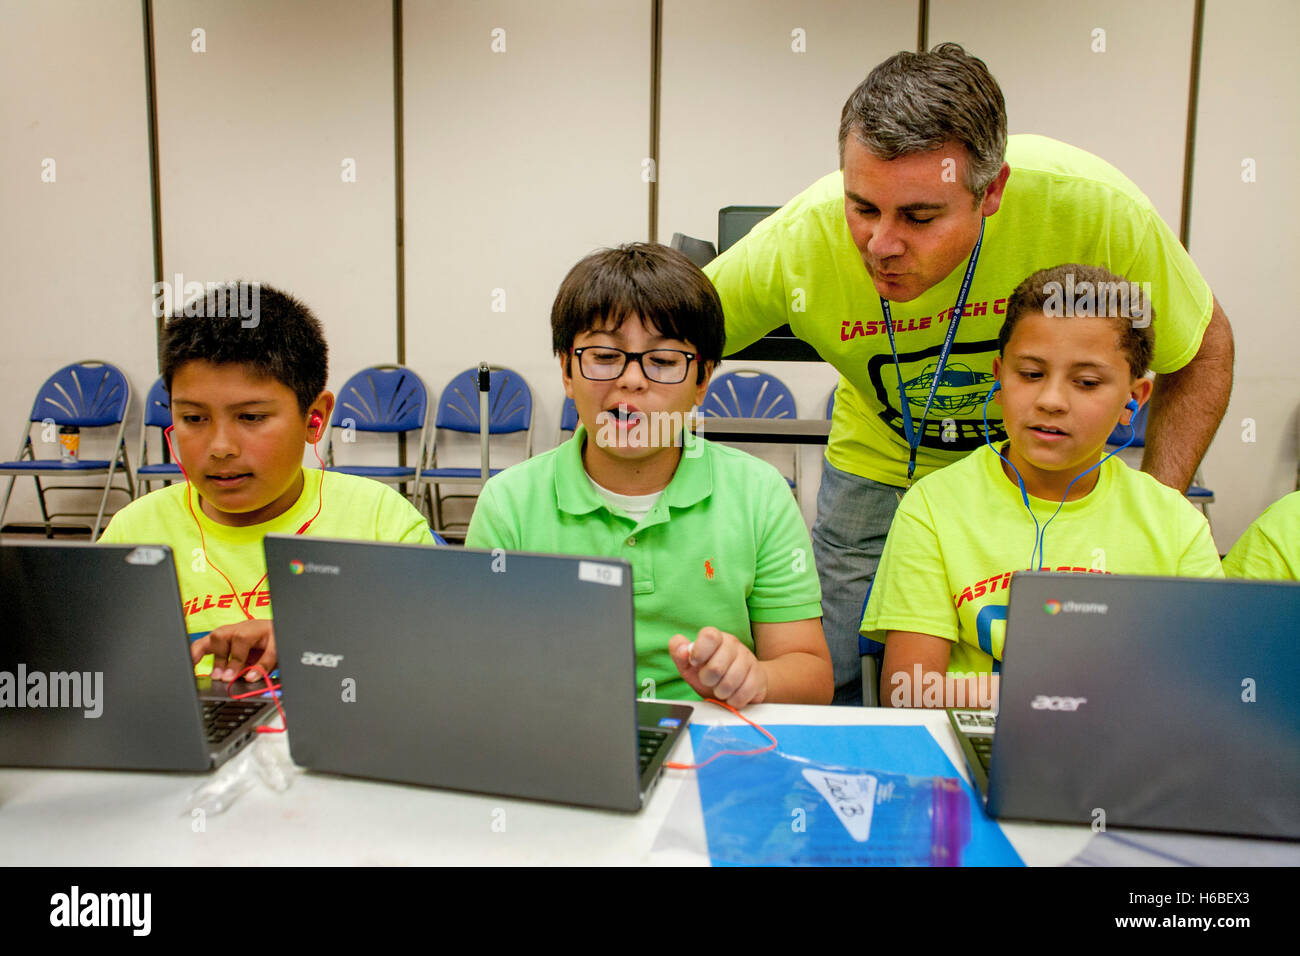 Une institutrice aide ses élèves à un projet d'animation numérique de classe à Mission Viejo, CA. Remarque projet coloré t shirts. Banque D'Images